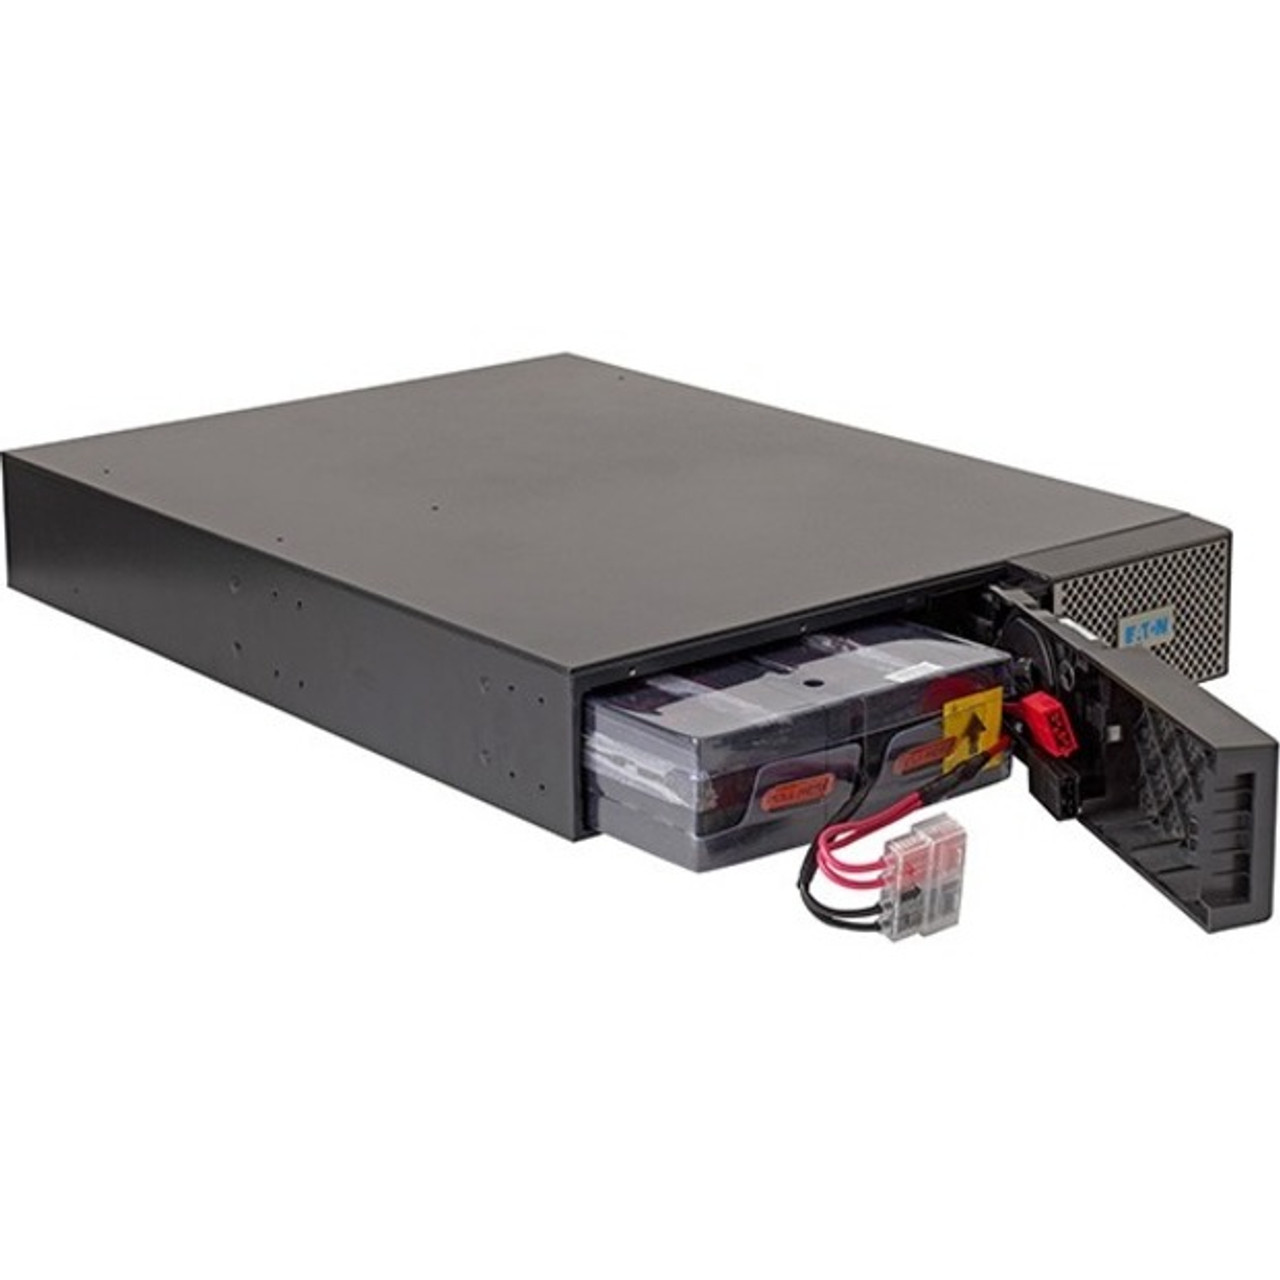 Eaton 9PX UPS, 2U, 1500 VA, 1350 W, 5-15P input, Outputs: (8) 5-15R, 120V, Network card - 2U Rack/Tower - 120 V AC Input - 120 V AC Output - 8 x NEMA 5-15R